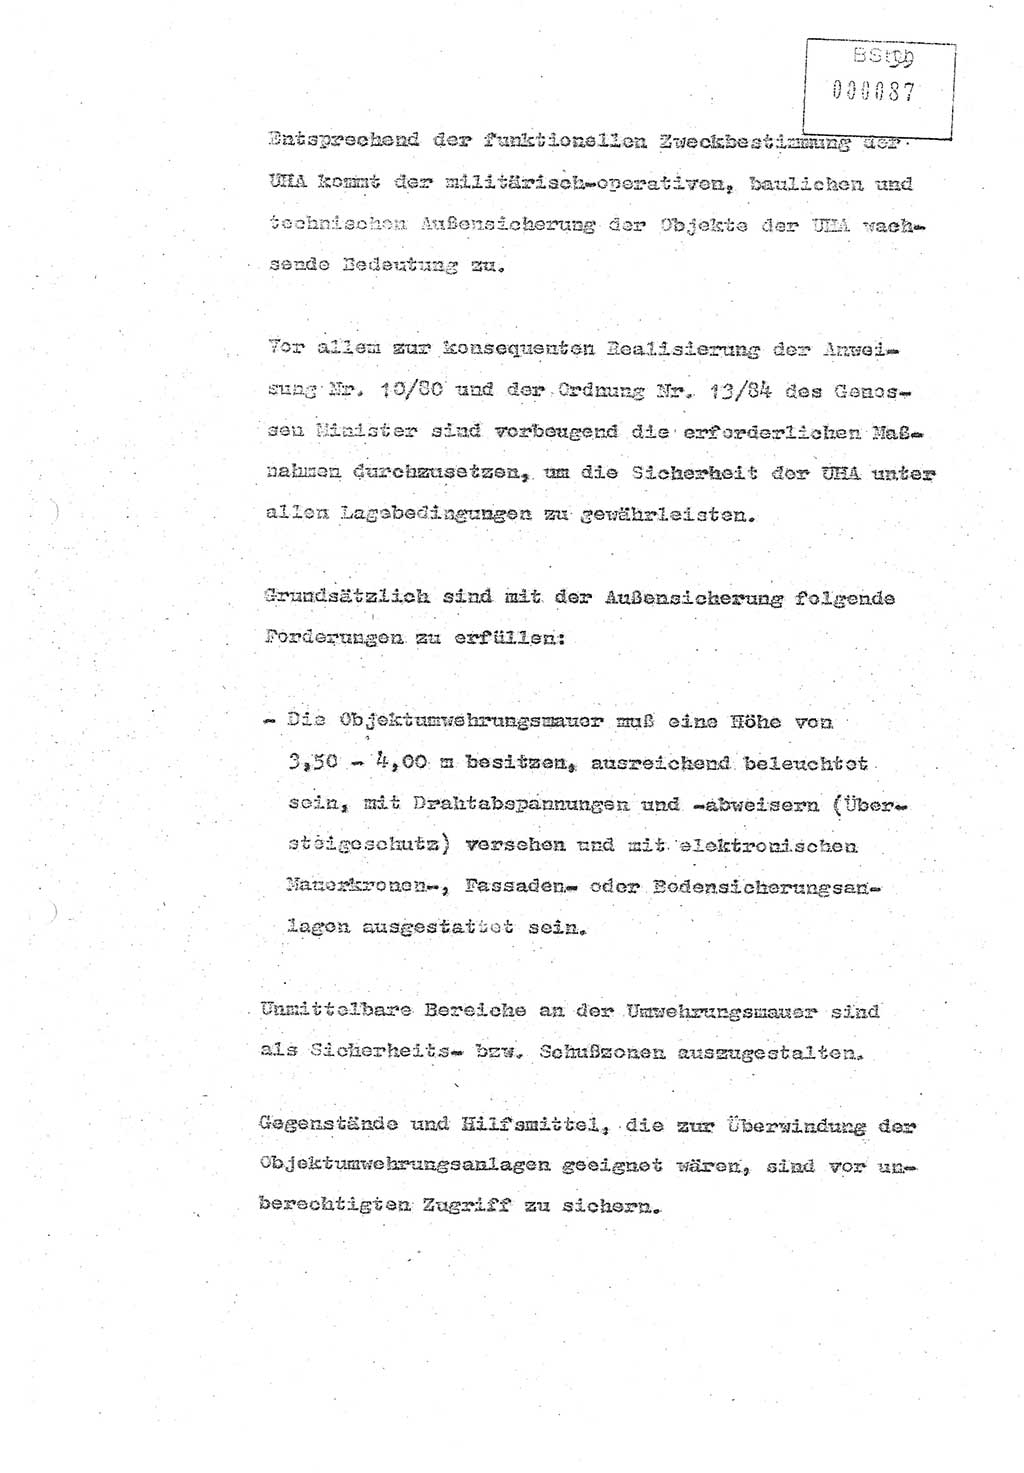 Referat (Oberst Siegfried Rataizick) zur Dienstkonferenz der Abteilung ⅩⅣ des MfS Berlin [Ministerium für Staatssicherheit, Deutsche Demokratische Republik (DDR)] Berlin-Hohenschönhausen vom 5.3.1986 bis 6.3.1986, Abteilung XIV, Berlin, 20.2.1986, Seite 39 (Ref. Di.-Konf. Abt. ⅩⅣ MfS DDR Bln. 1986, S. 39)